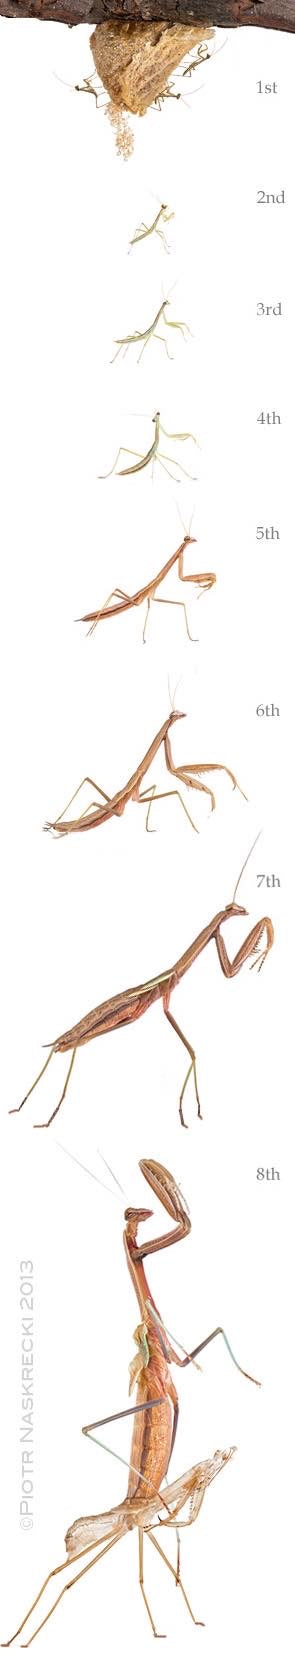 Sphodromantis lineola Mantis gigante africana con dientes y vida